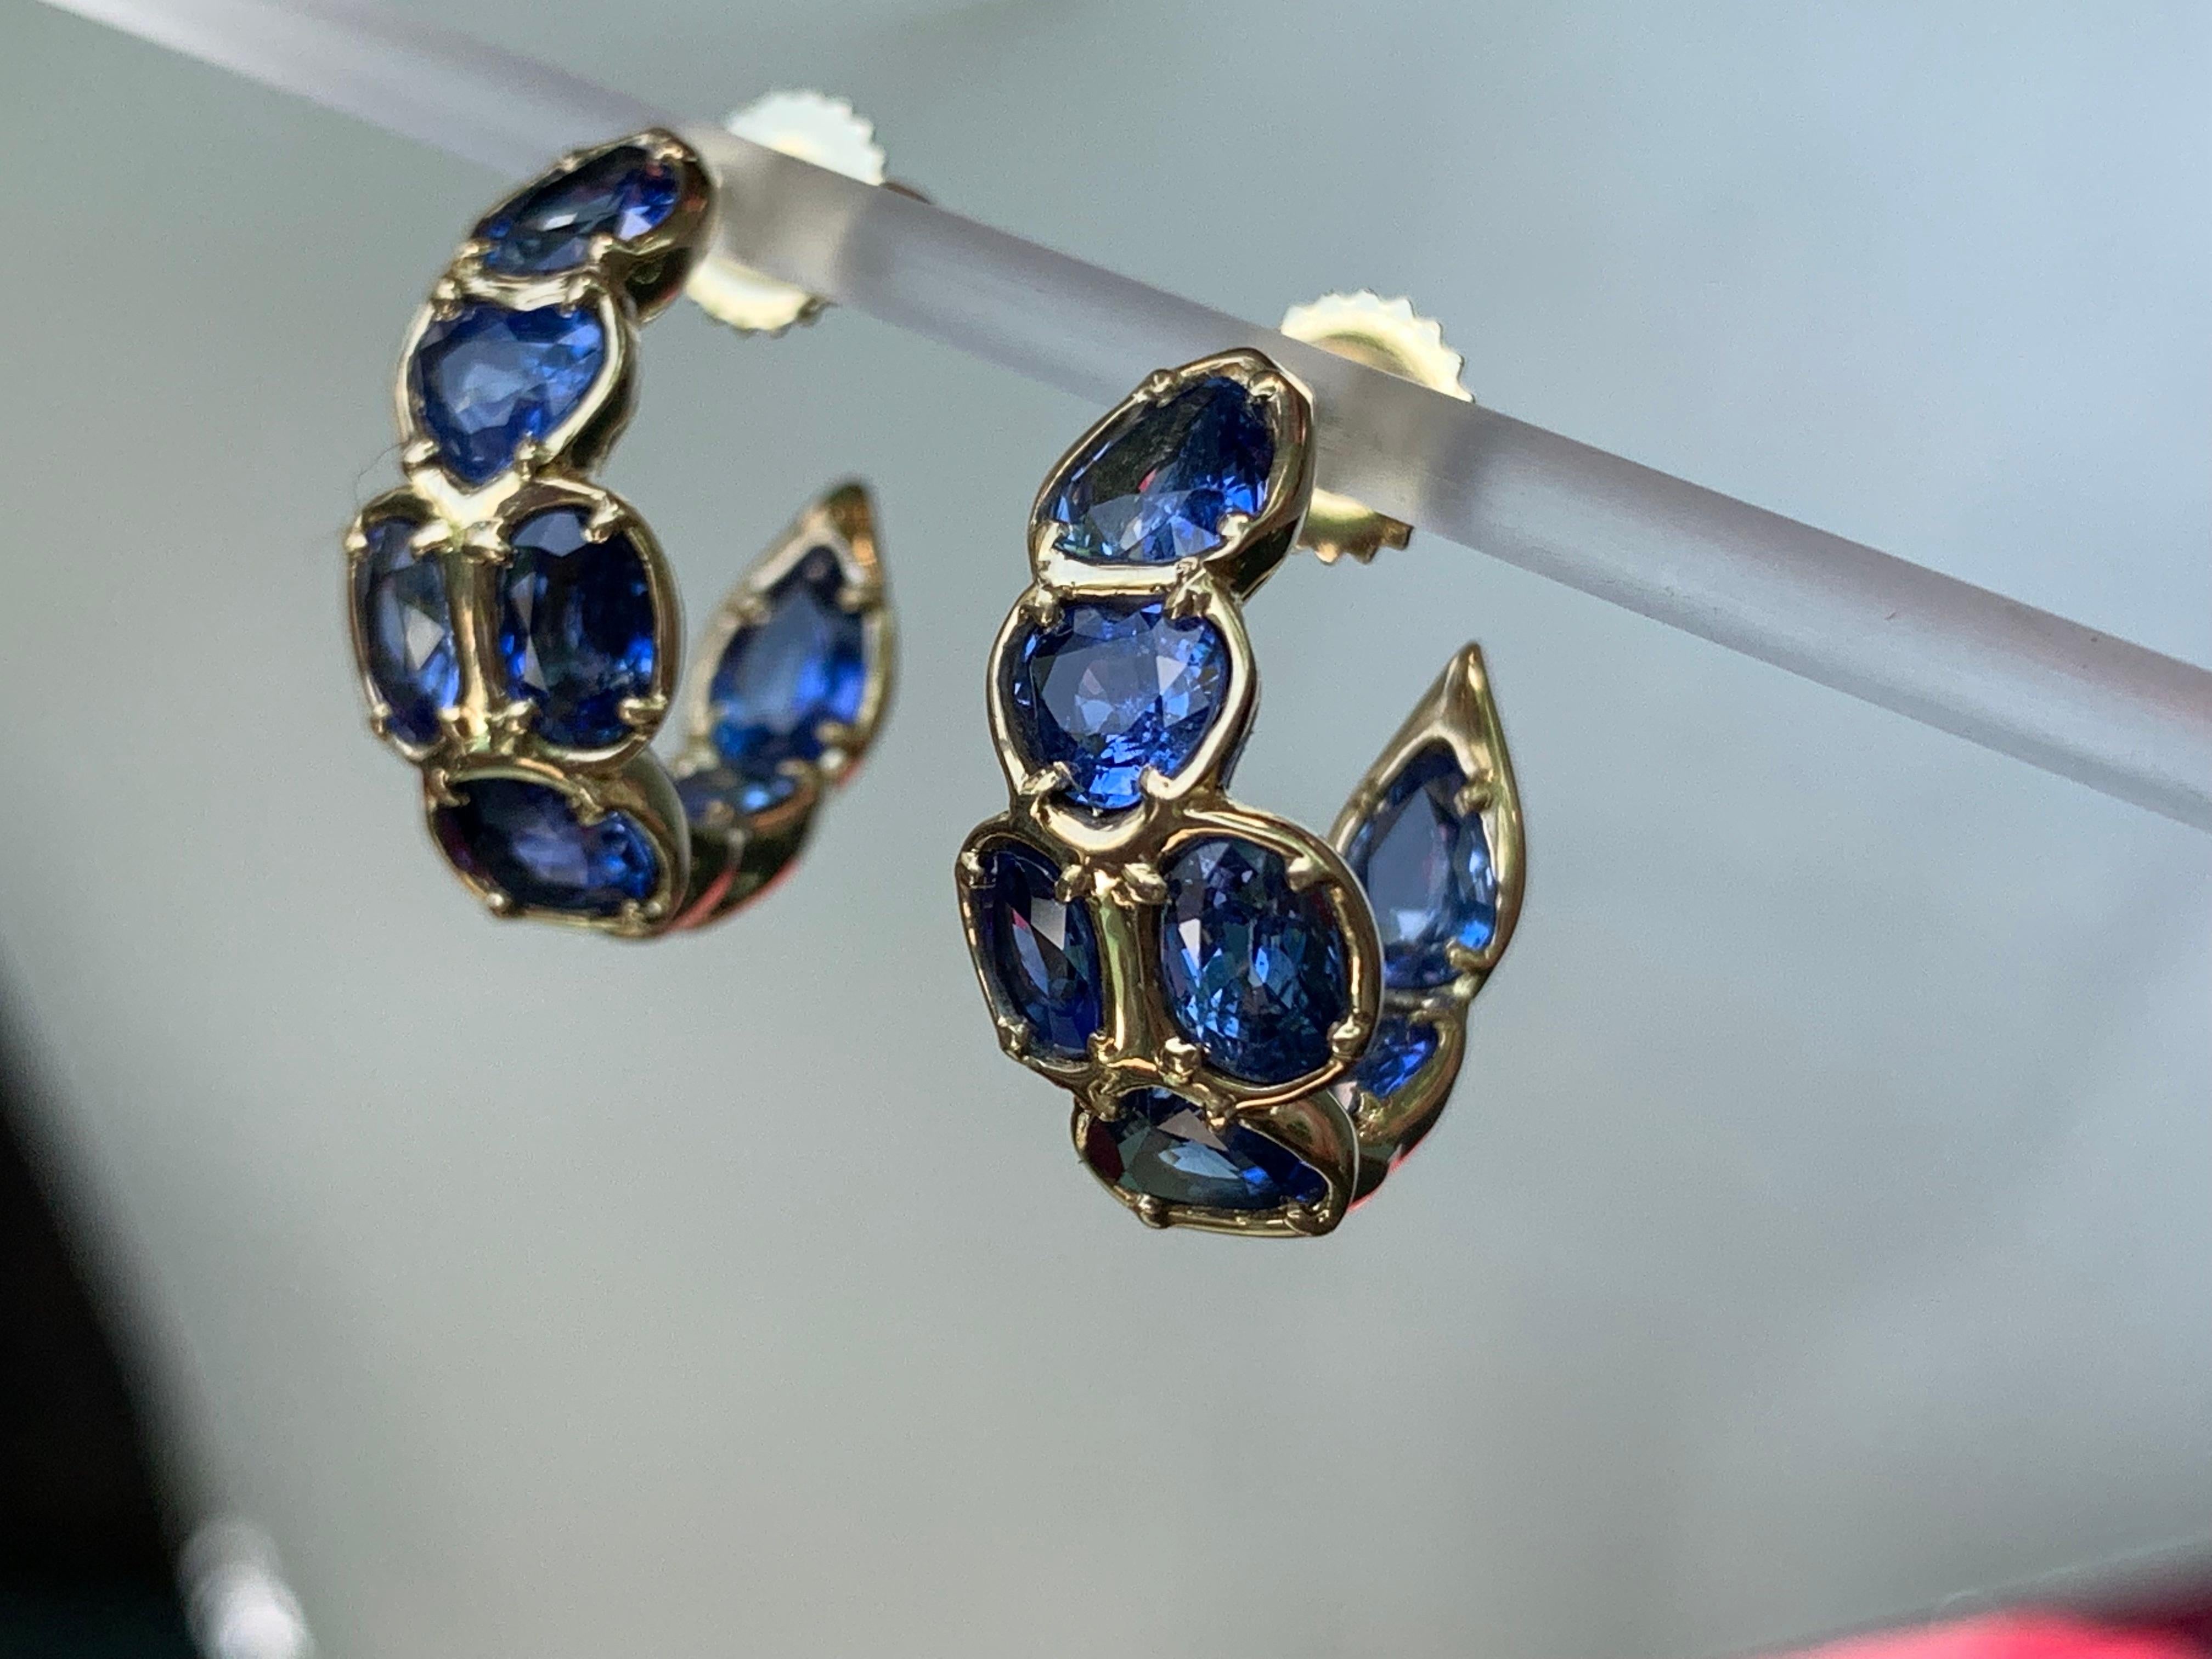 Mixed Cut Fancy Shaped Blue Sapphire Ooak Hoop Earrings in 18kt Yellow Gold For Sale